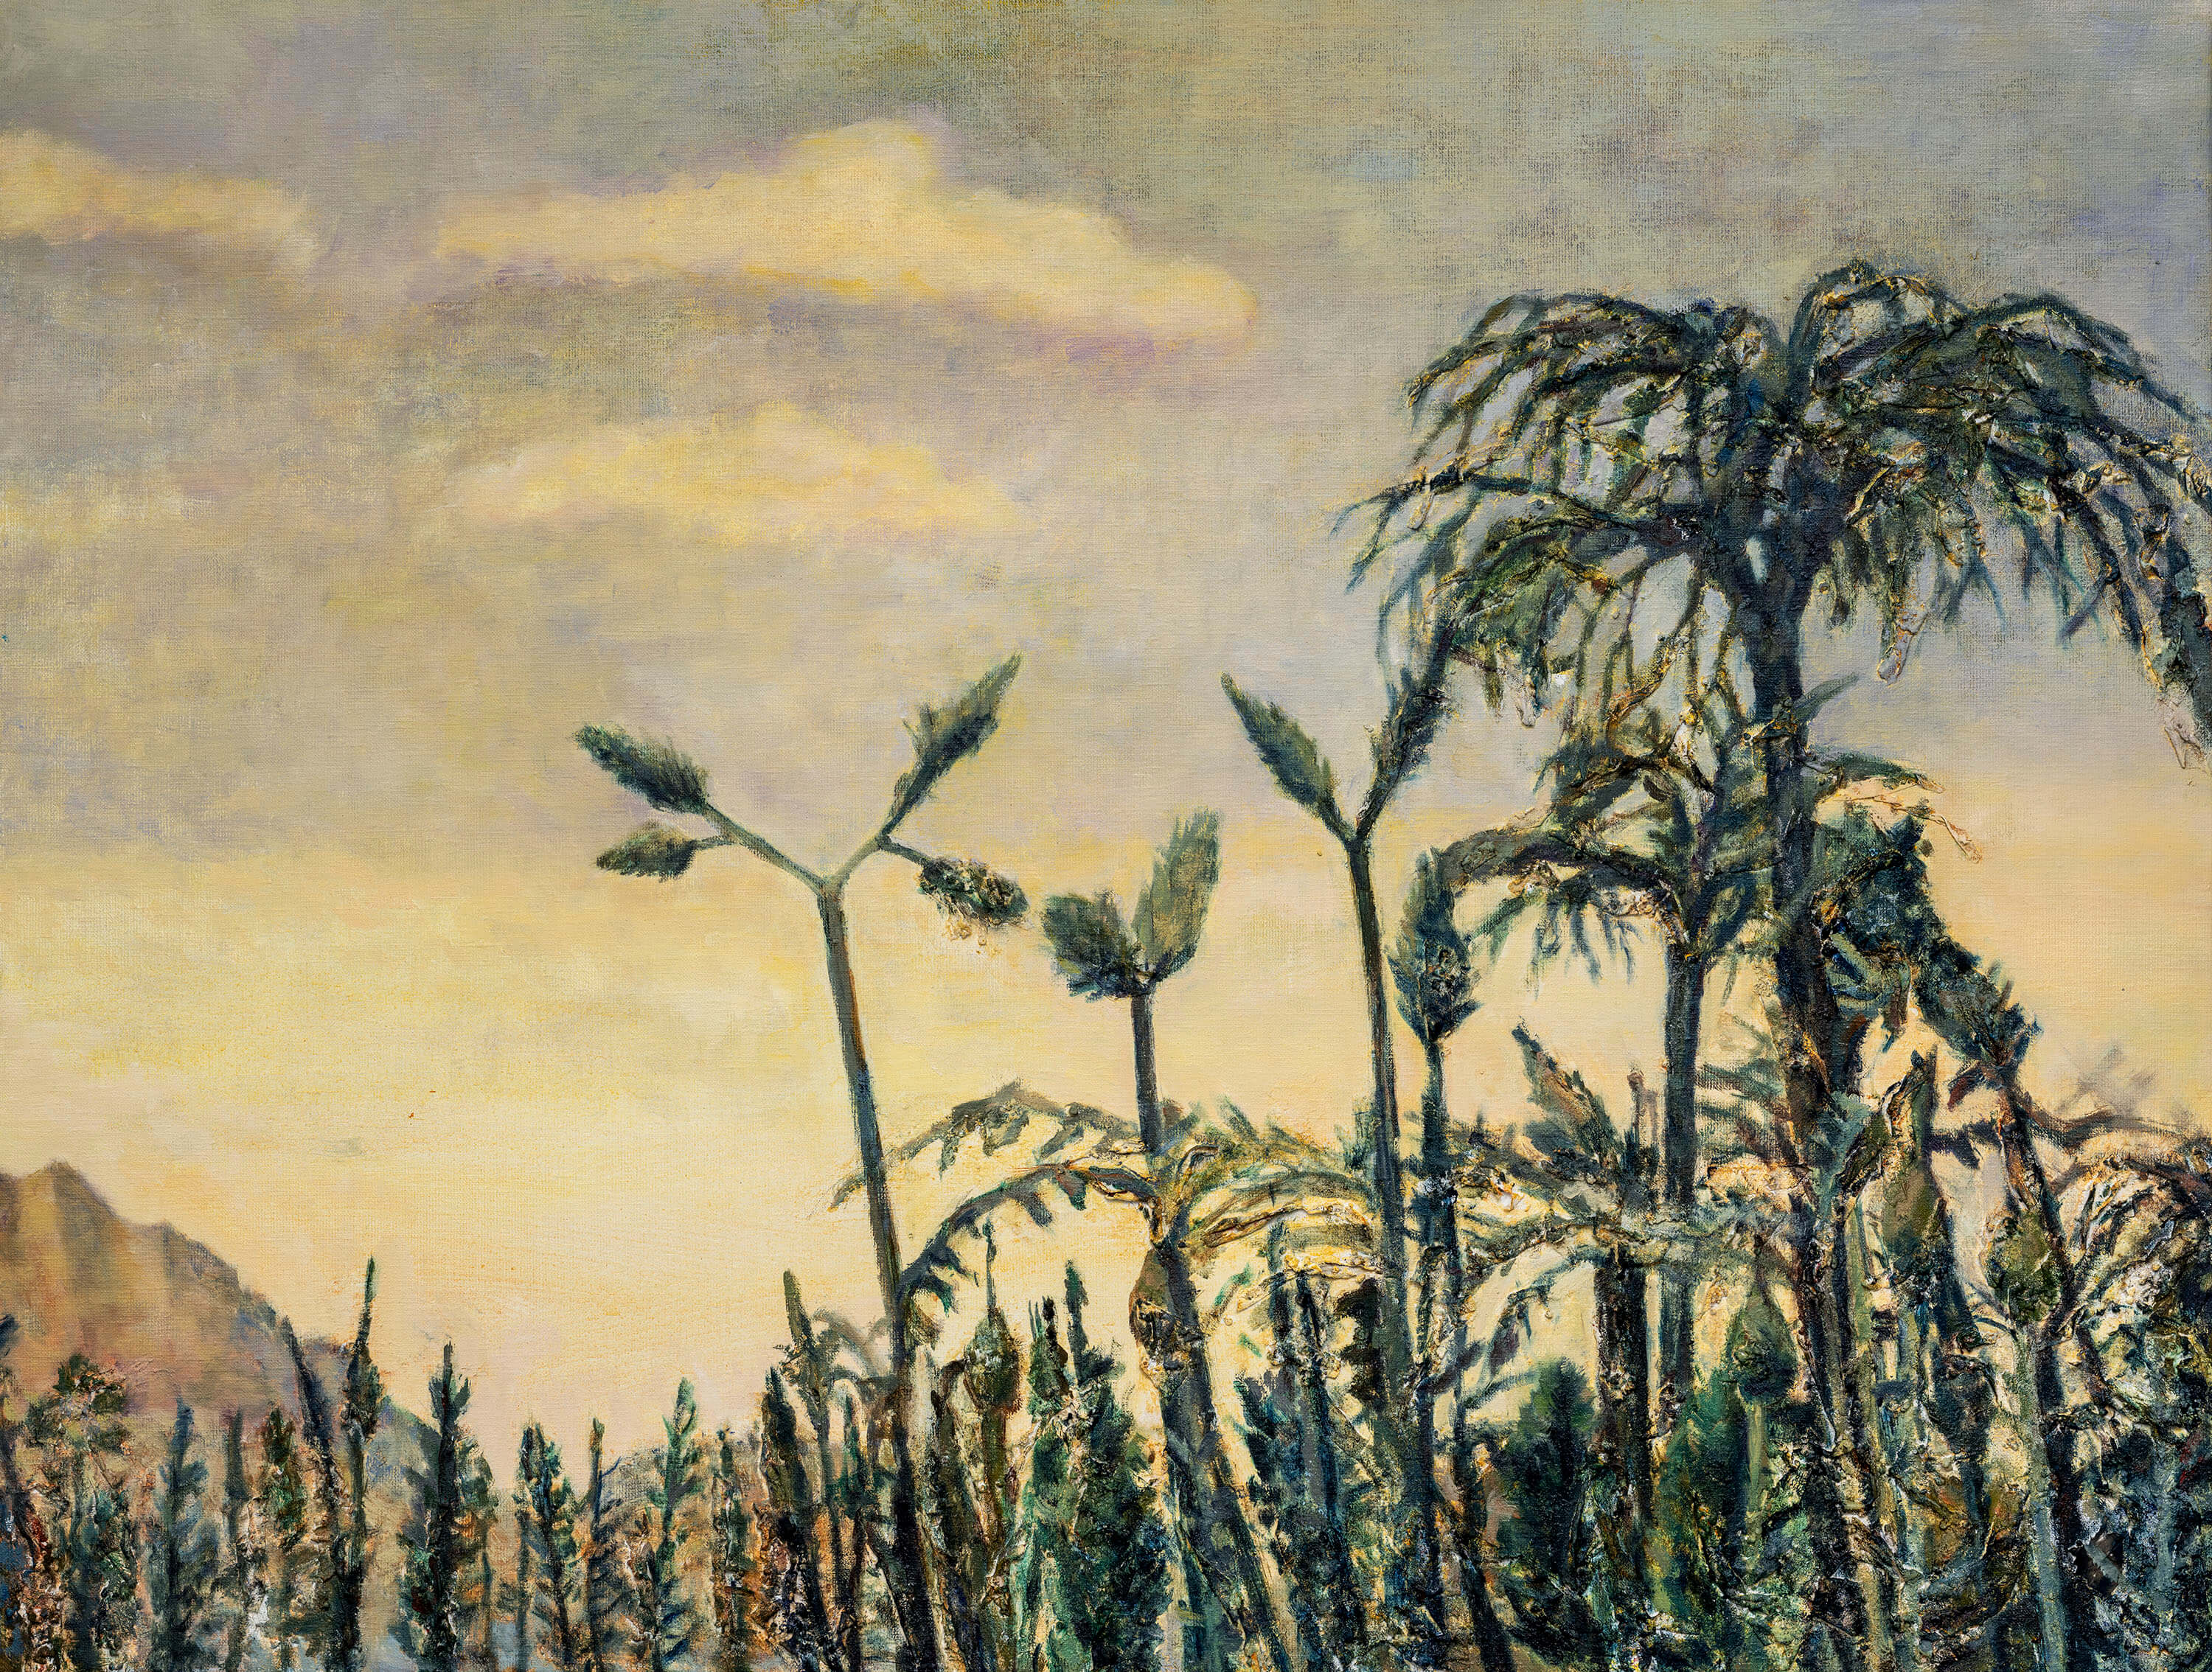 En bild i blandteknik av palmträd och andra växter mot en gulaktig himmel